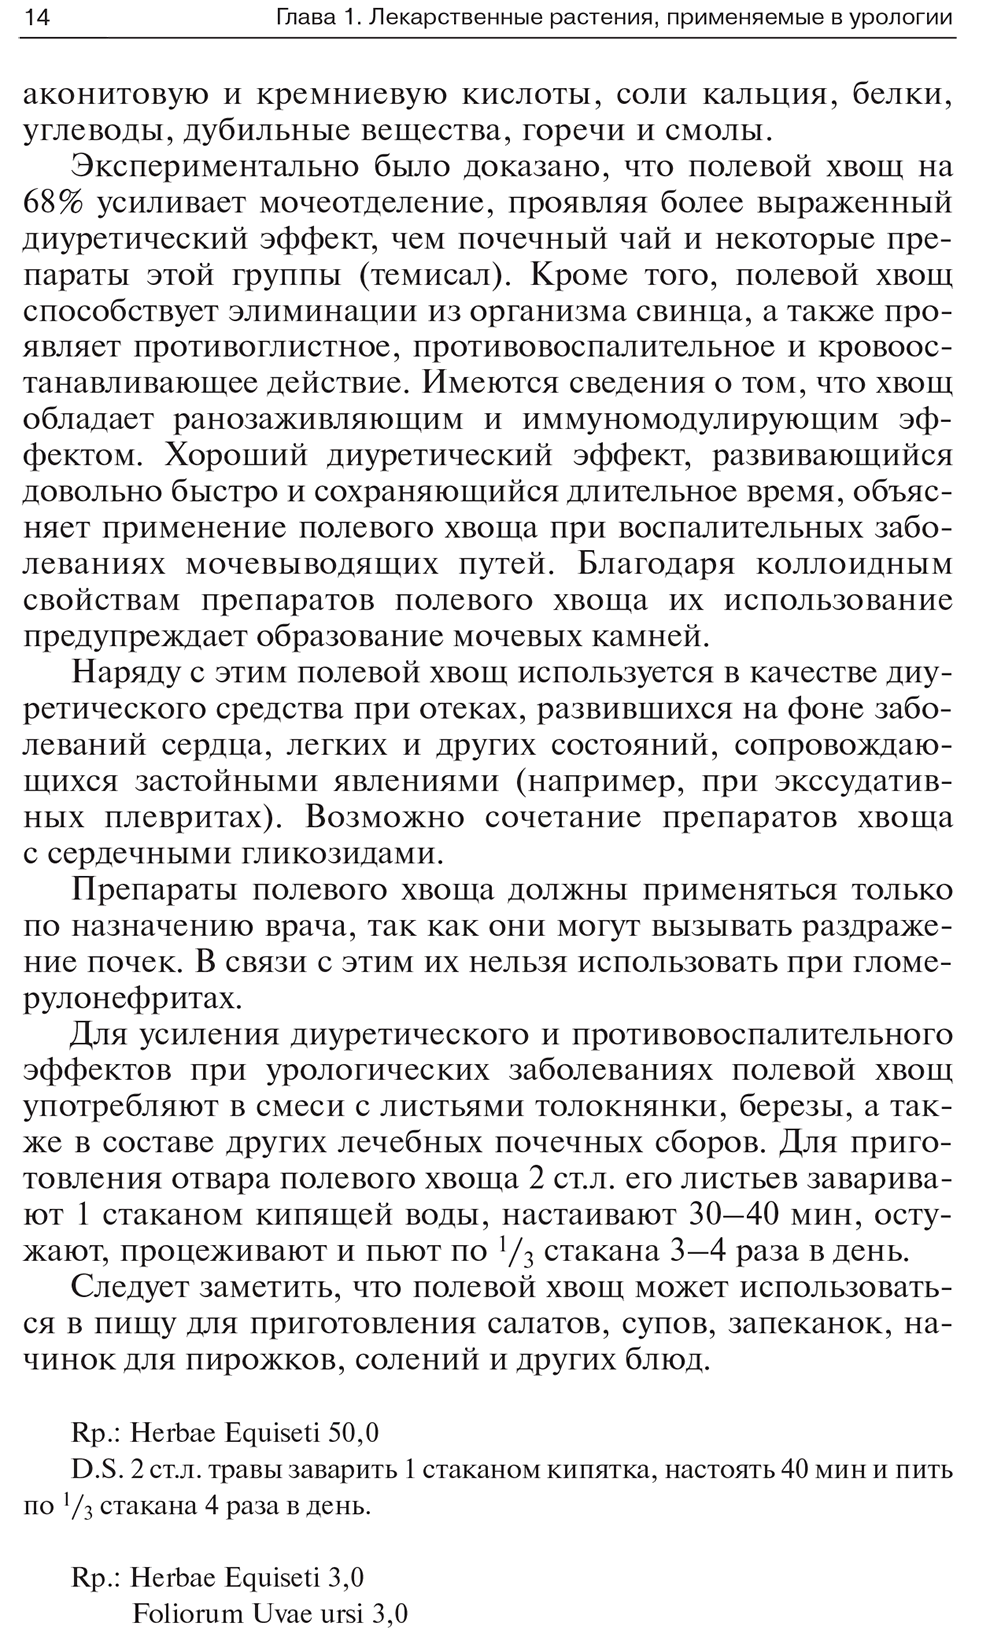 Пример страницы из книги "Лекарственные растения и препараты растительного происхождения в урологии" - Мирошников В. М.